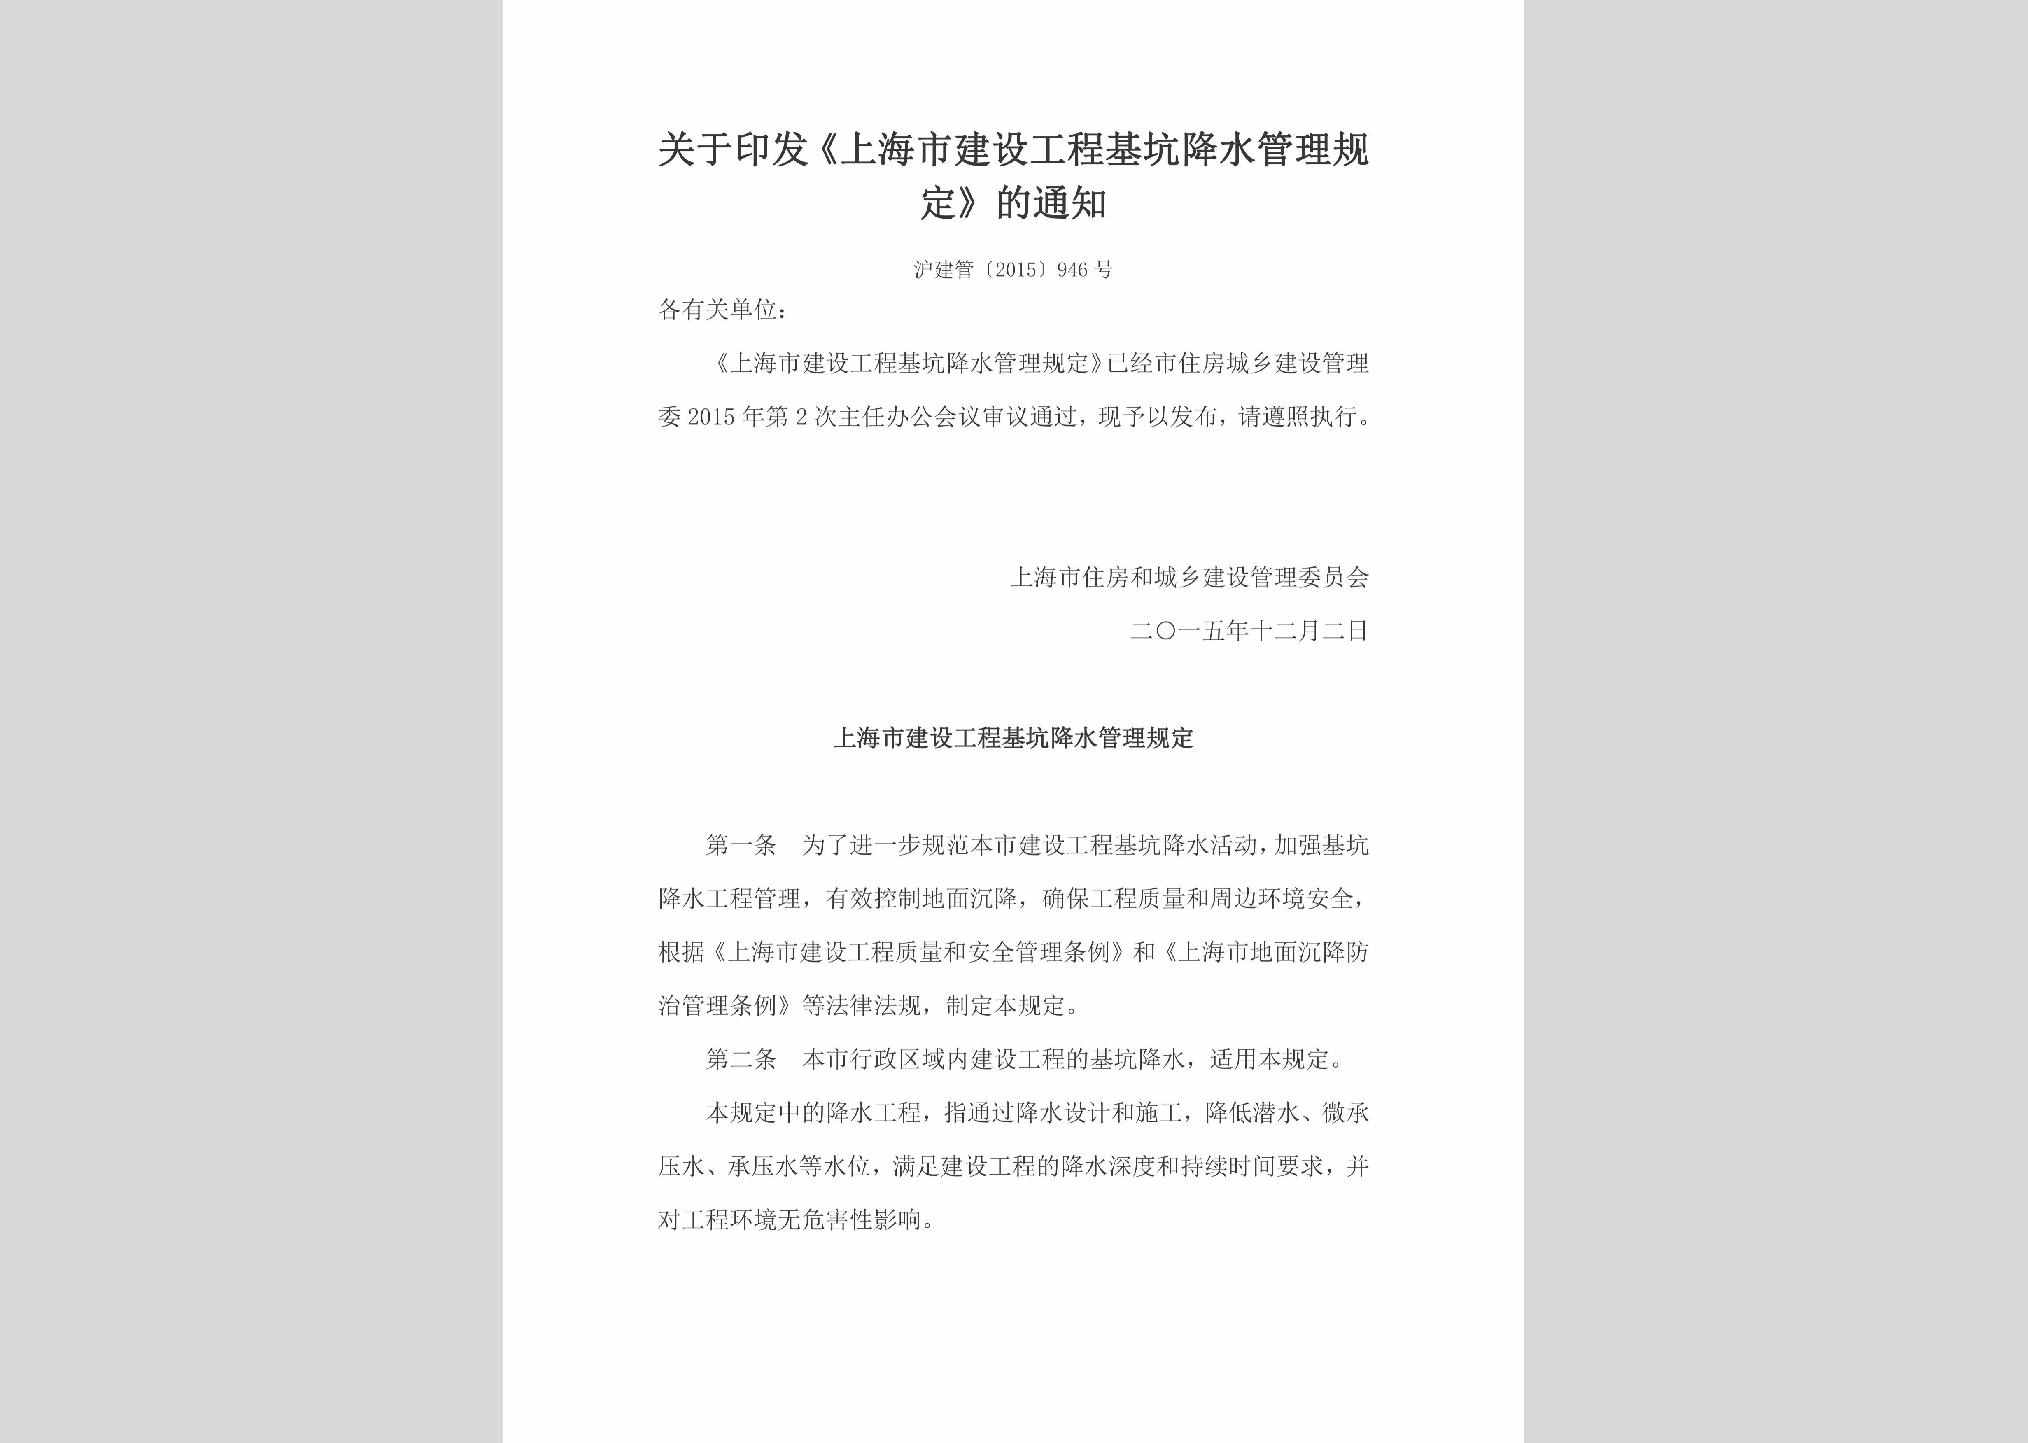 沪建管[2015]946号：关于印发《上海市建设工程基坑降水管理规定》的通知